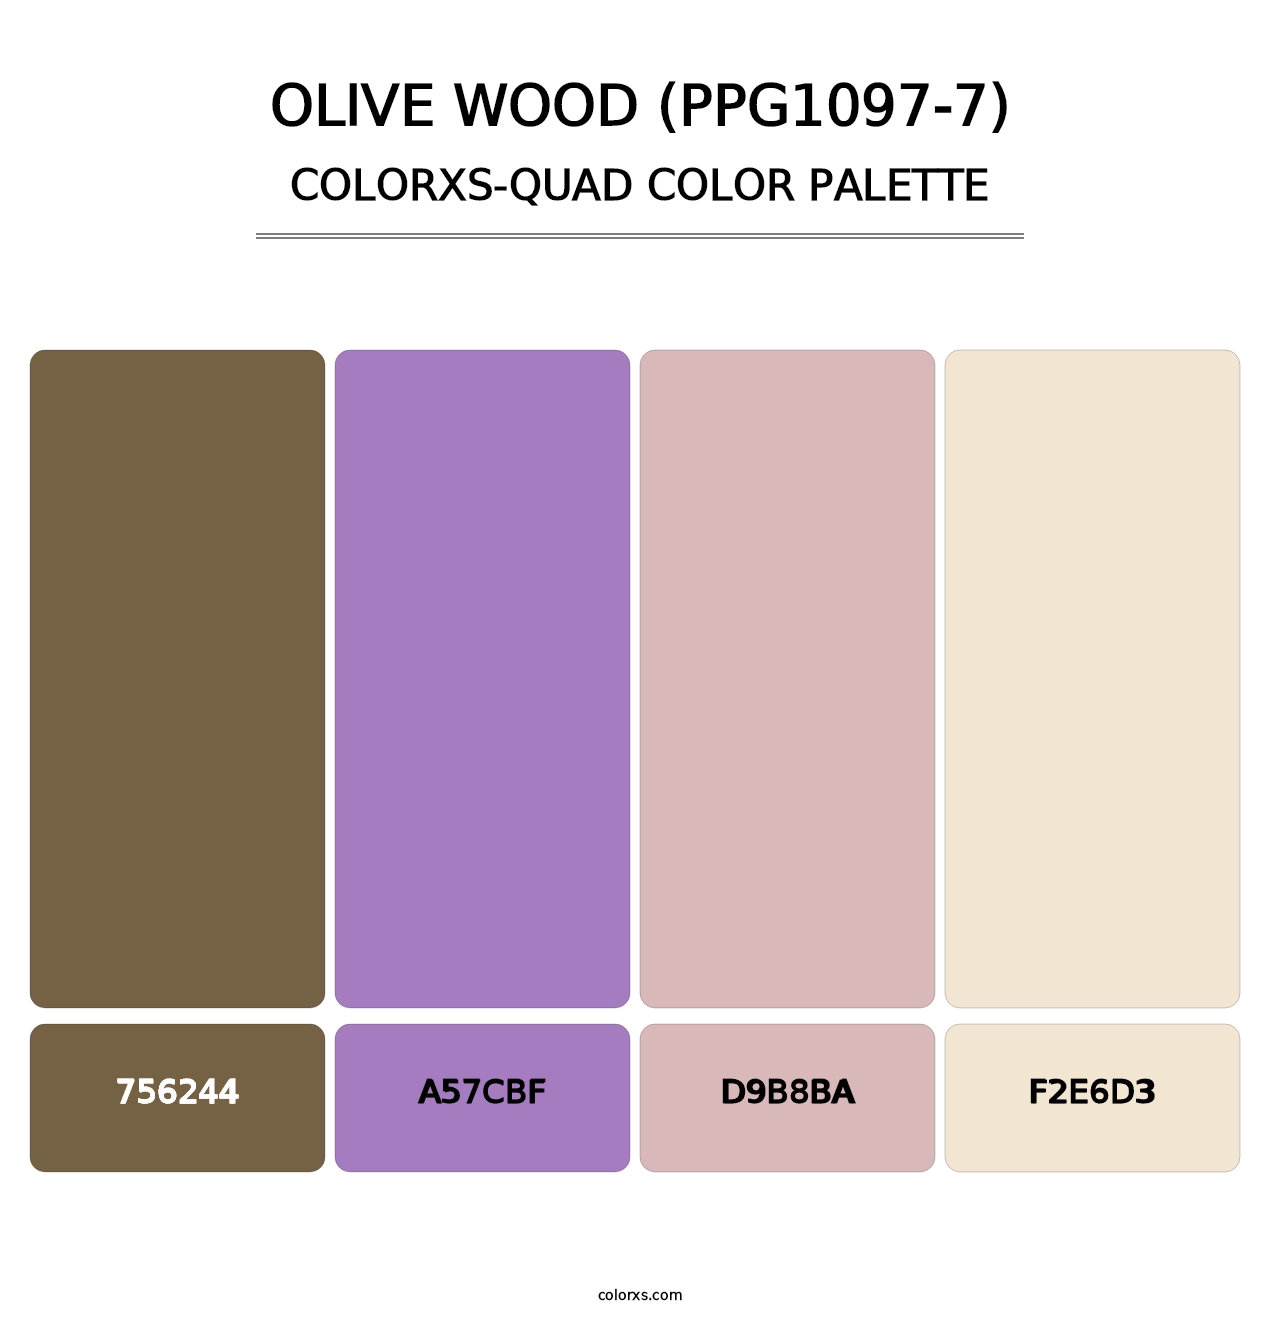 Olive Wood (PPG1097-7) - Colorxs Quad Palette